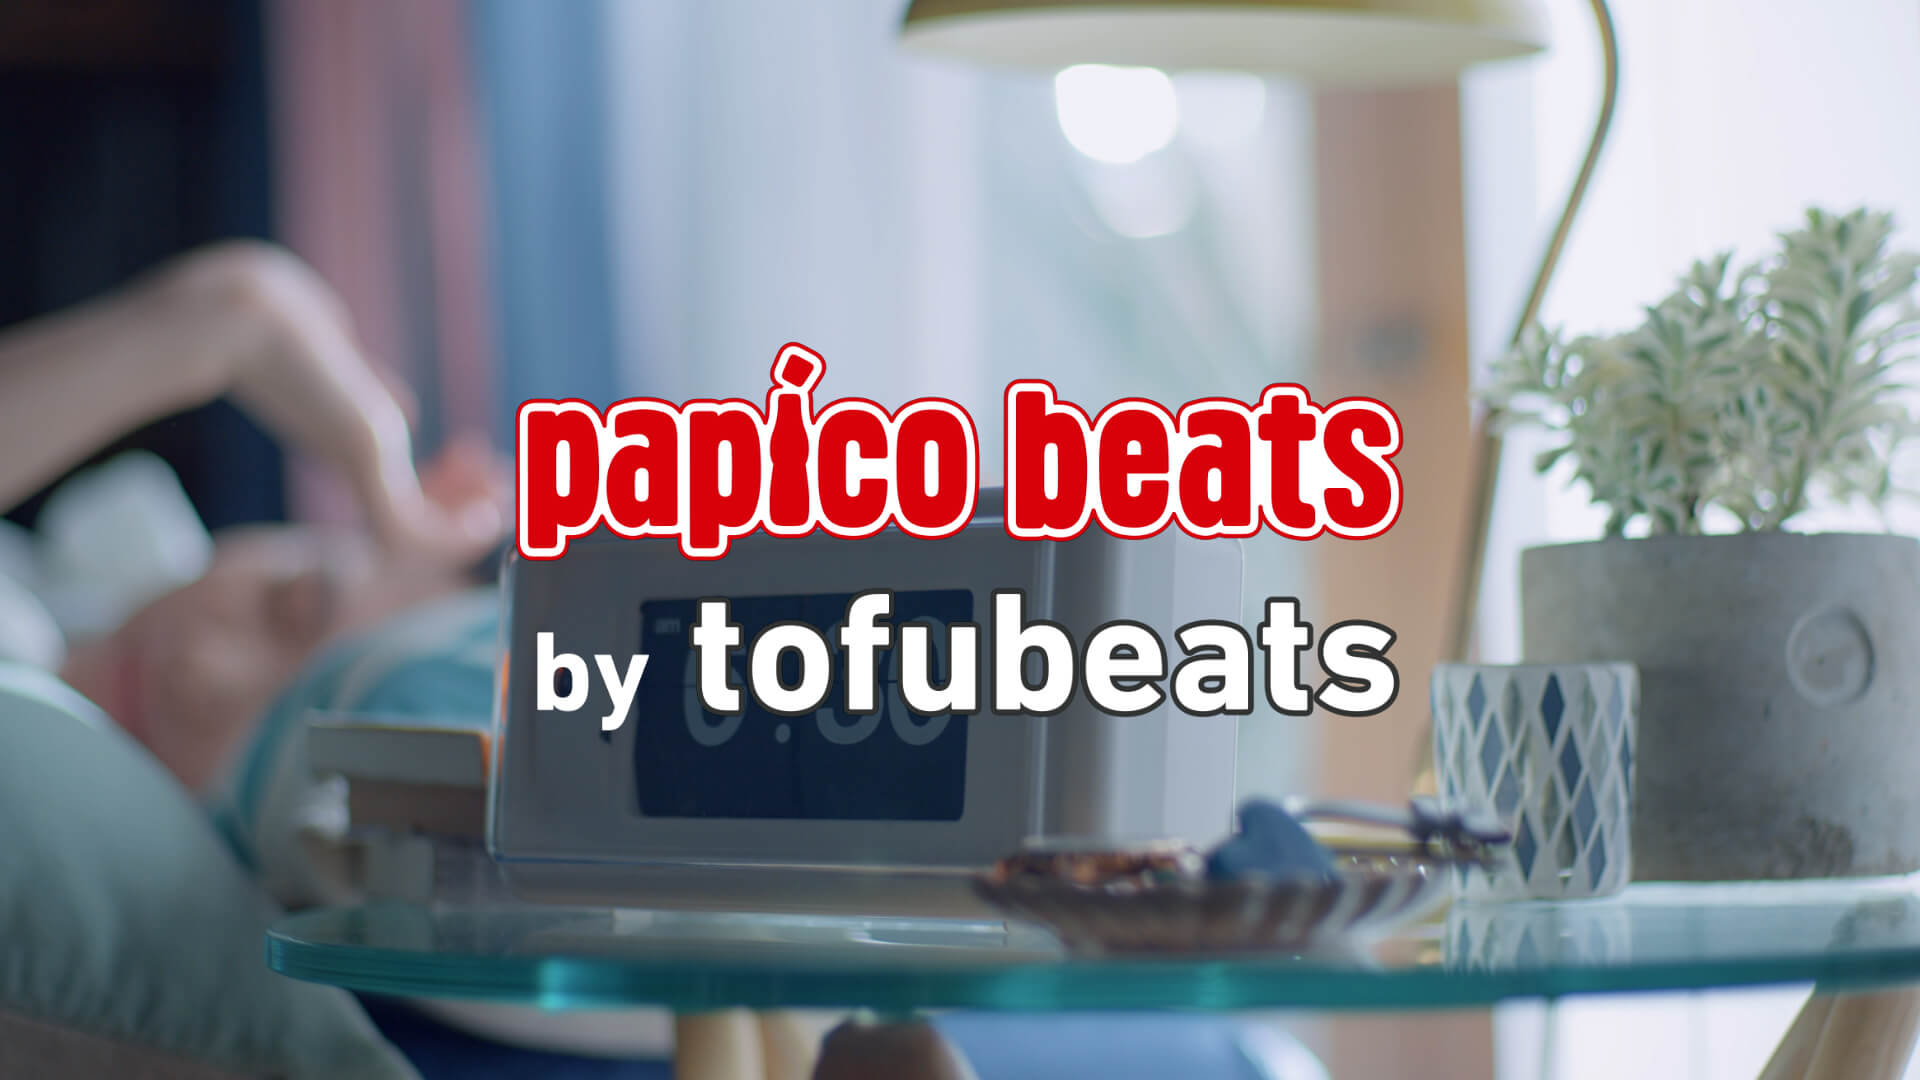 tofubeatsがパピコのWEBムービーオリジナルテーマ曲“papico beats”の作曲を担当！「とにかくパピコを食べながら制作しました！」 music210903_tofubeats_glico_2